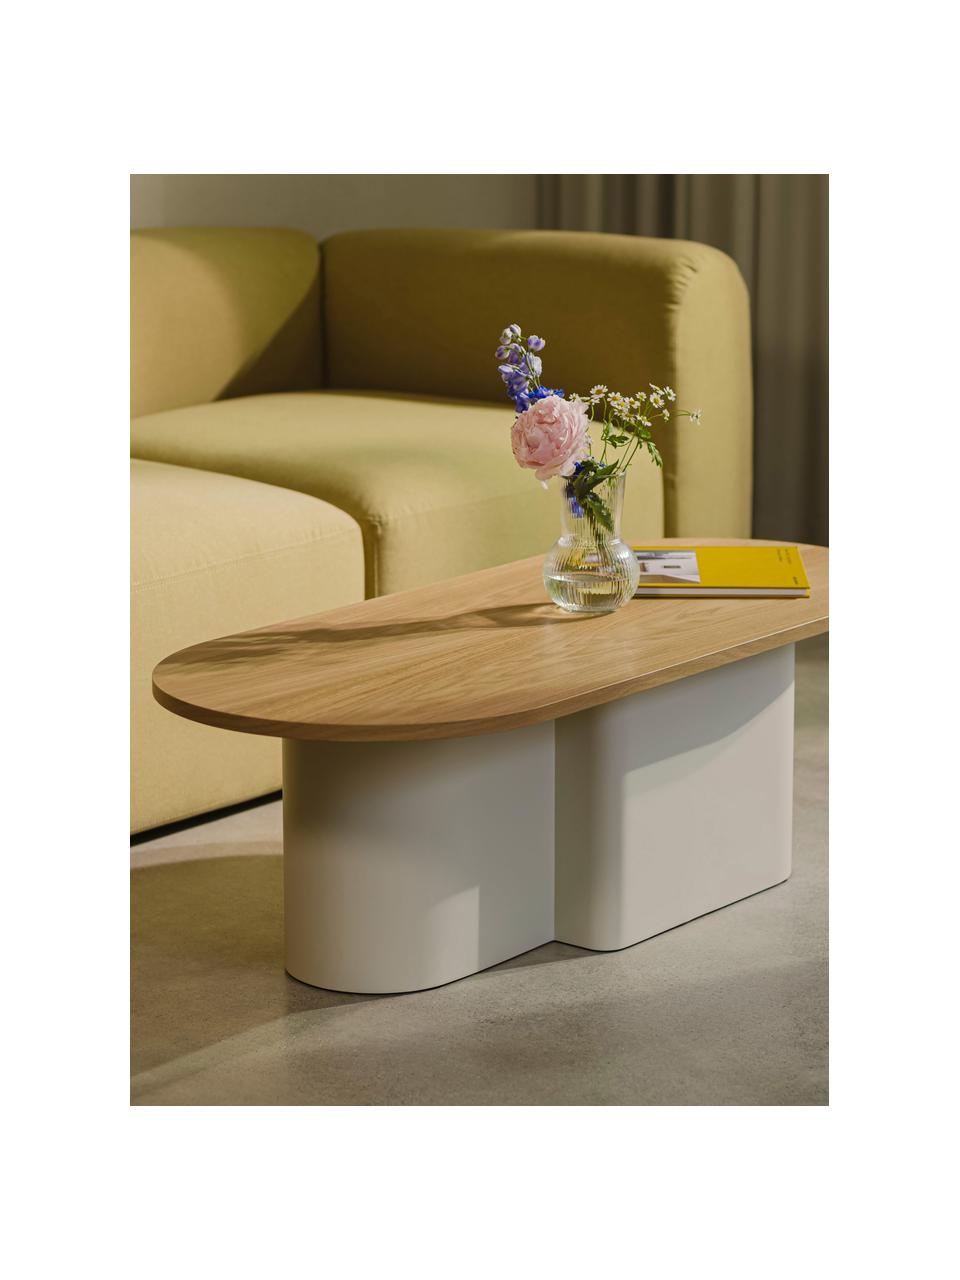 Table basse ovale en bois Looi, Blanc crème, bois clair, larg. 115 x prof. 37 cm